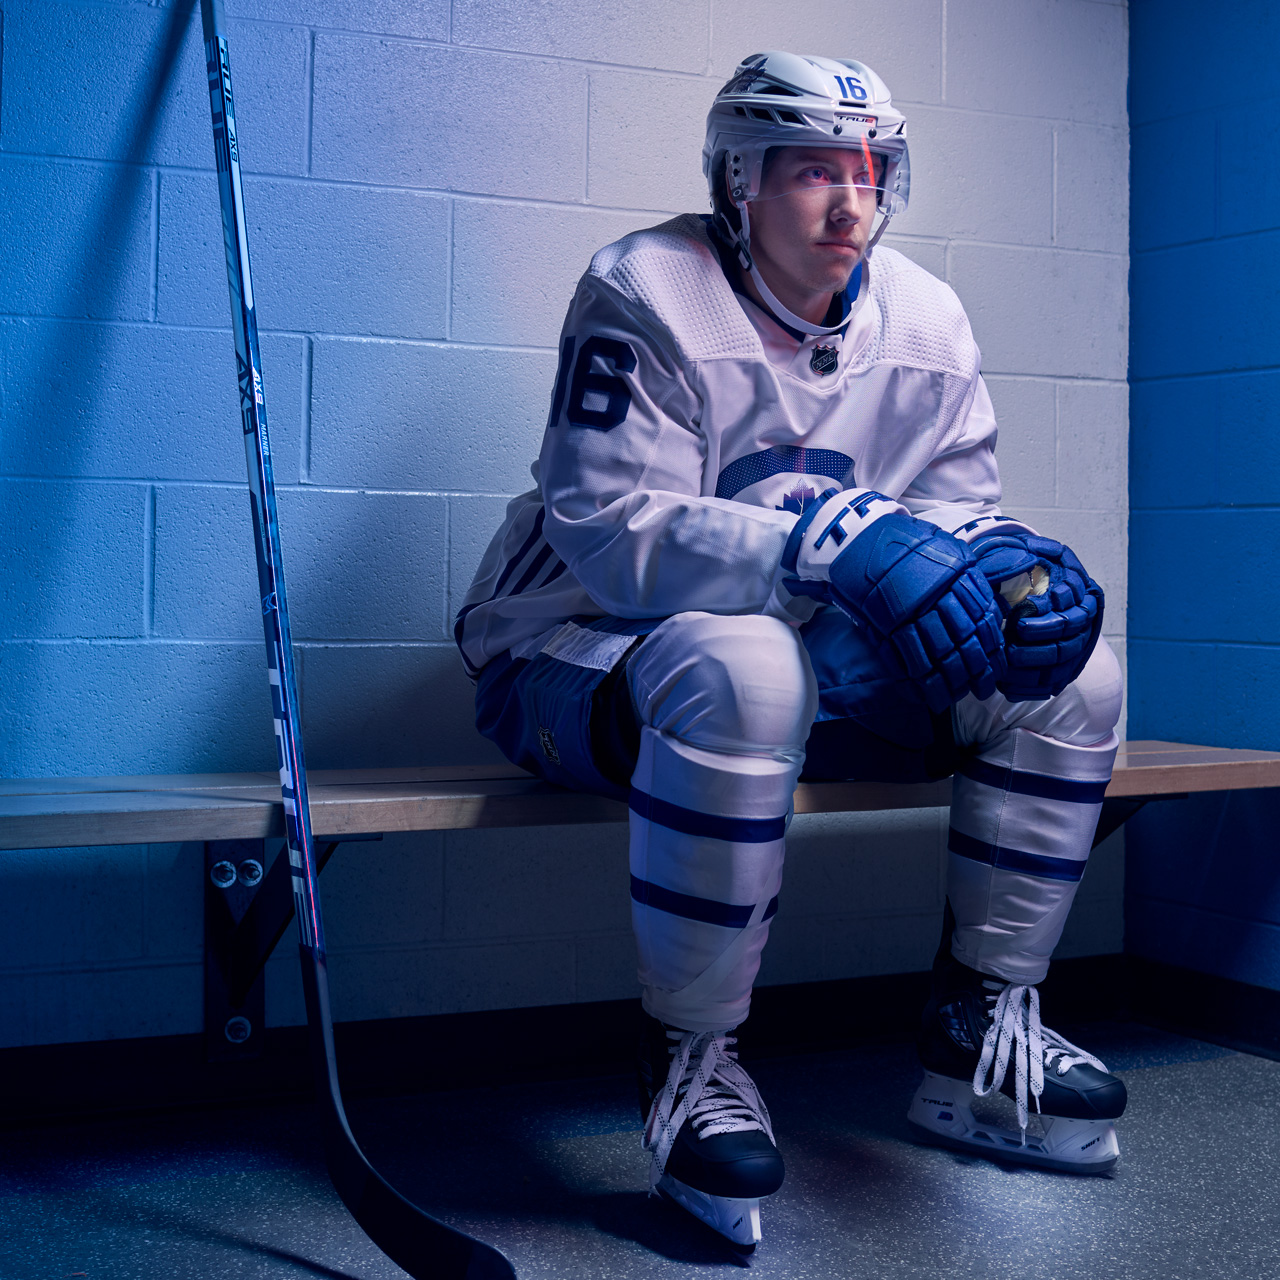 Mitch Marner sitting on a locker room bench in hockey gear